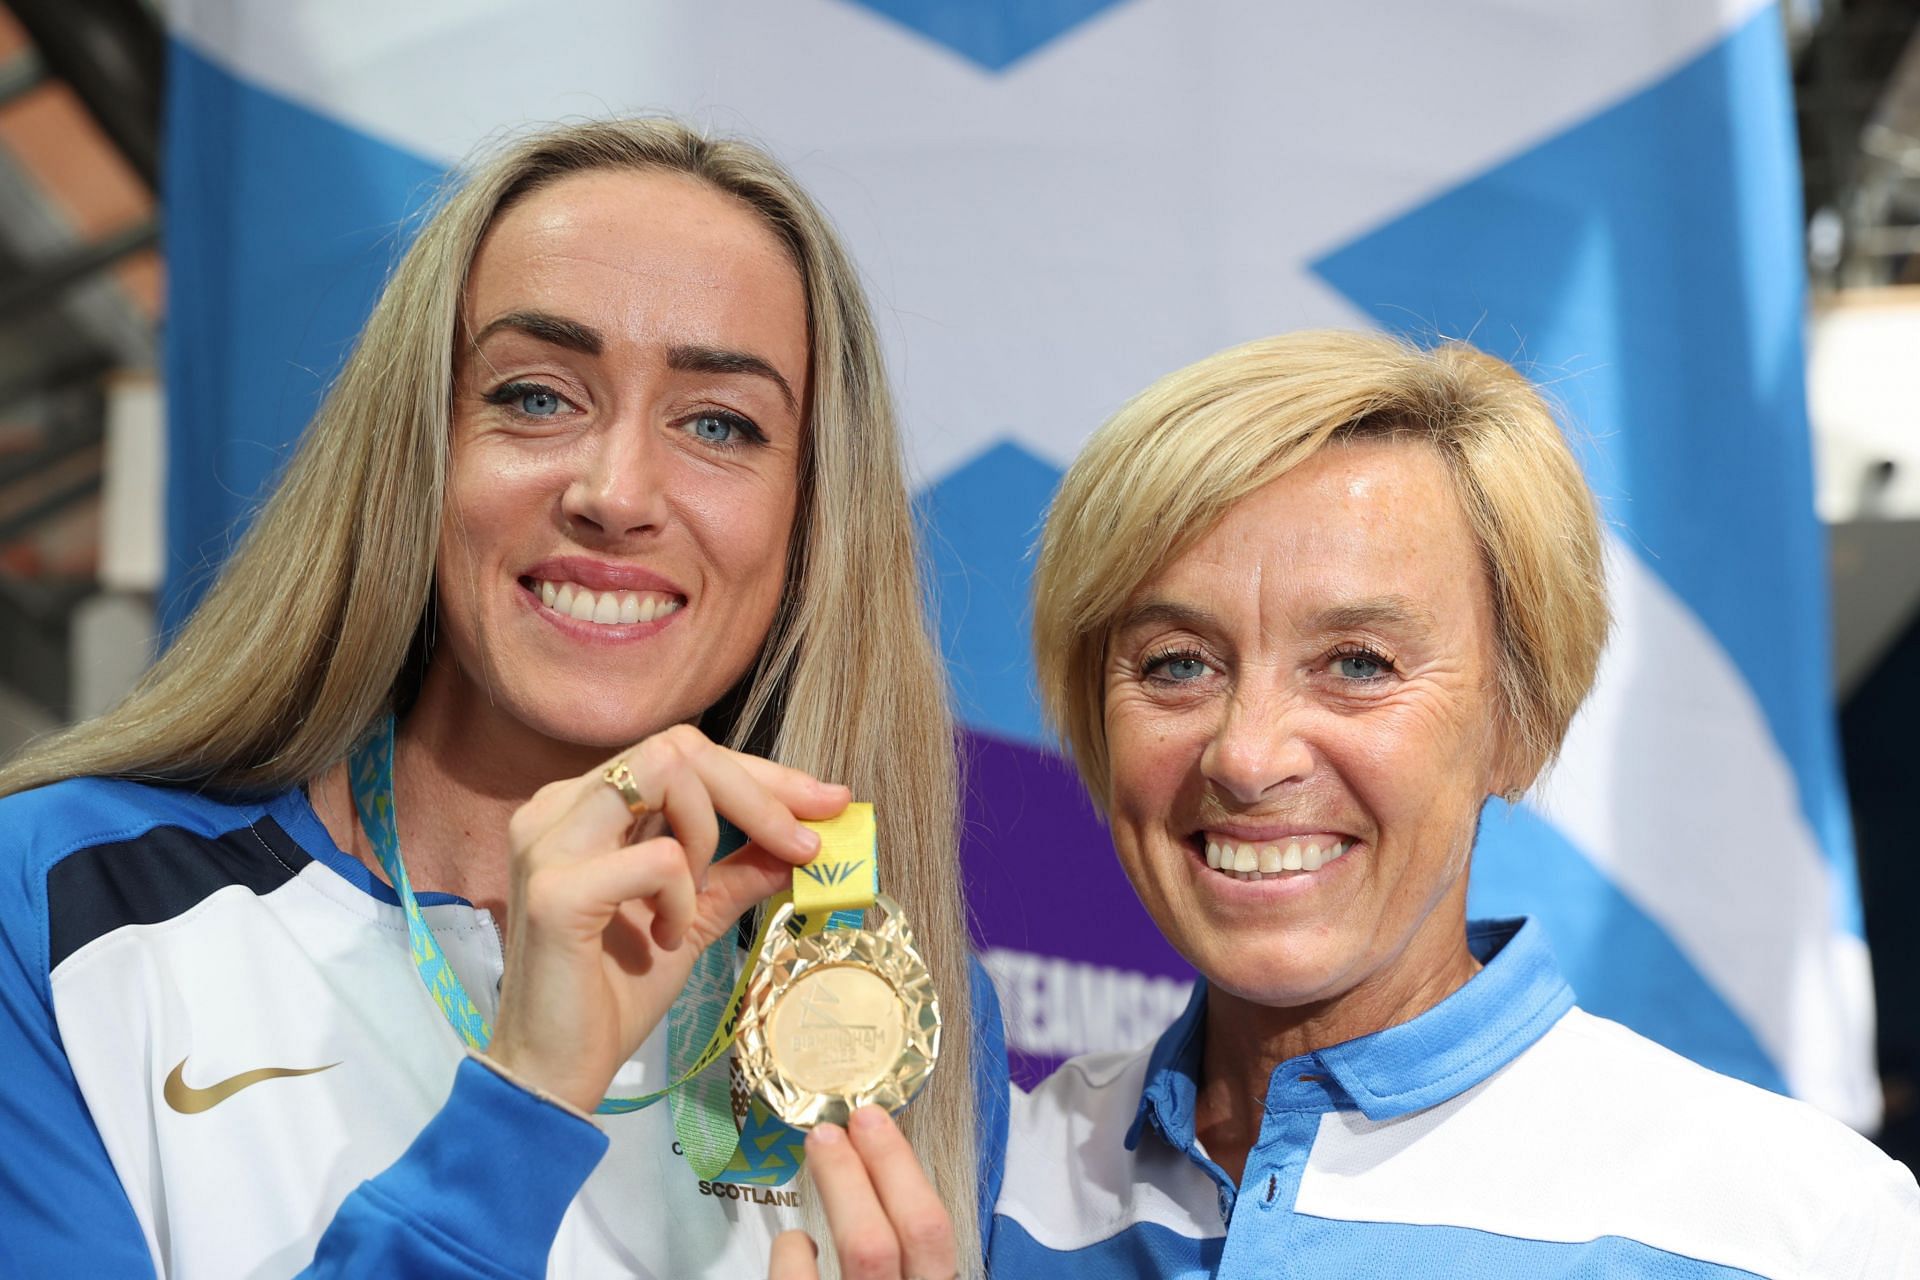 कॉमनवेल्थ गेम्स में 10 हजार मीटर दौड़ की विजेता ऐलिश (बाएं) के साथ उनकी मां लिज।